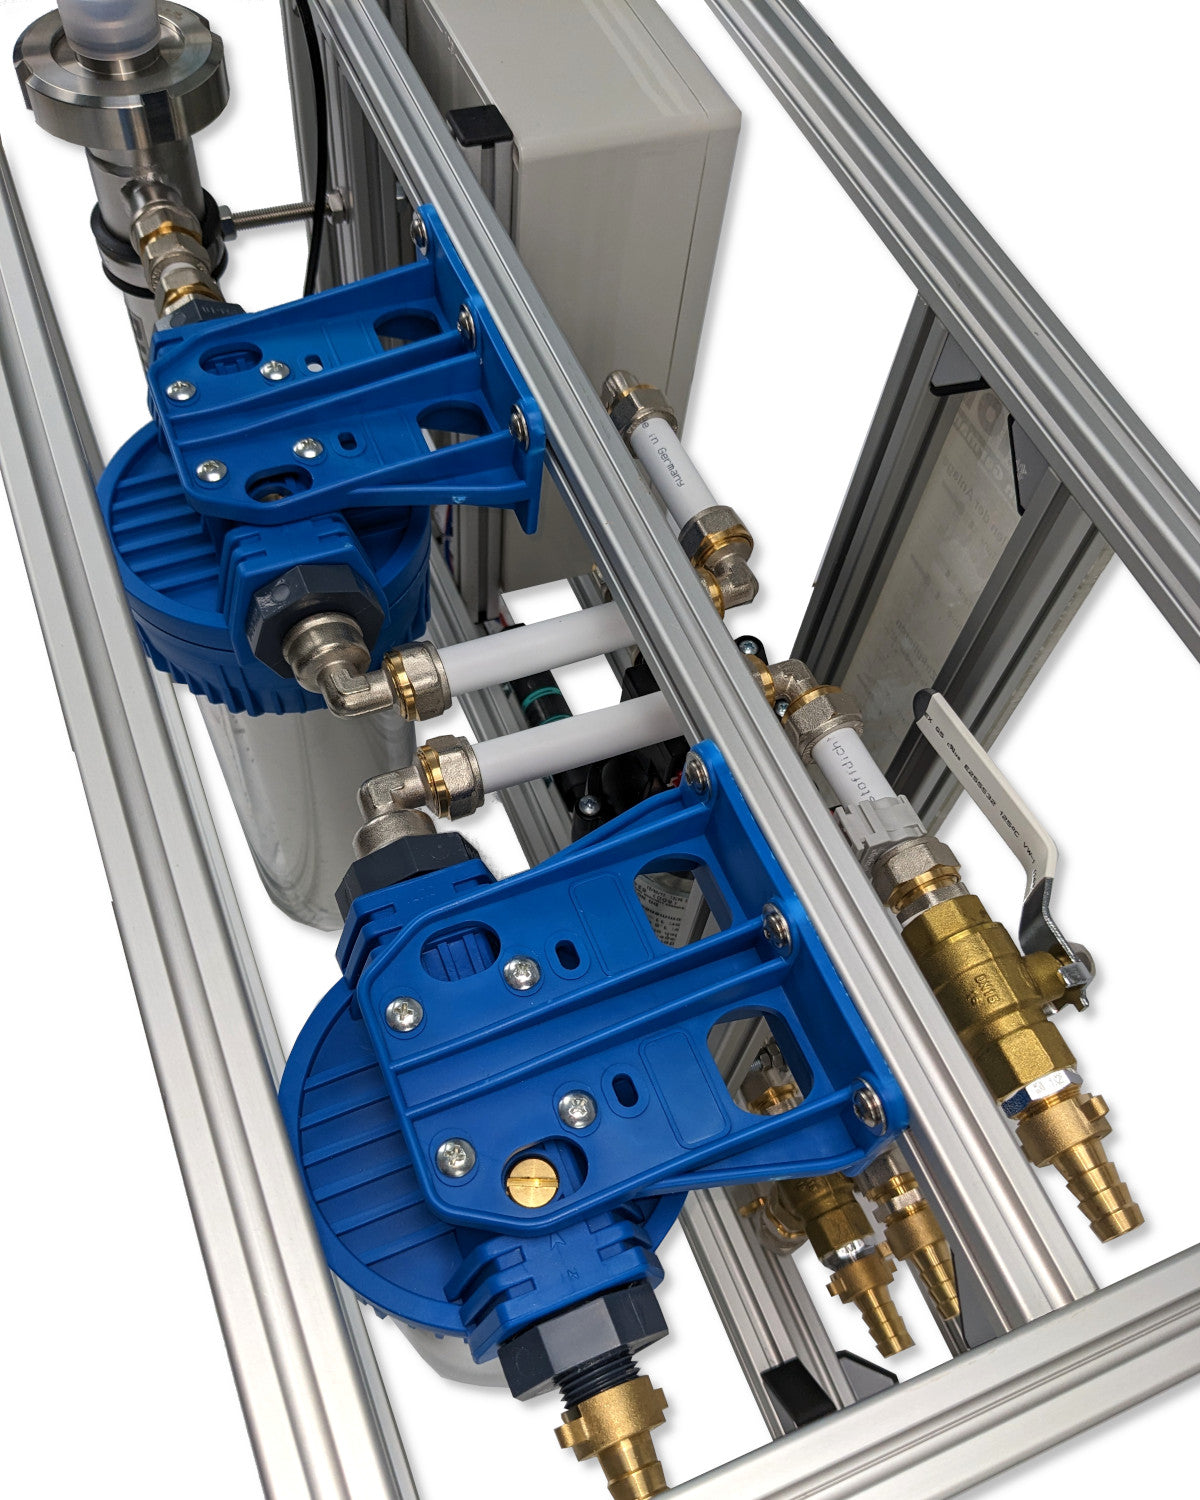 Eine PURION Mobile Concept OTC-Maschine mit langlebigen Komponenten, blauen Ventilen und daran befestigten Schläuchen zur mobilen Wasseraufbereitung.